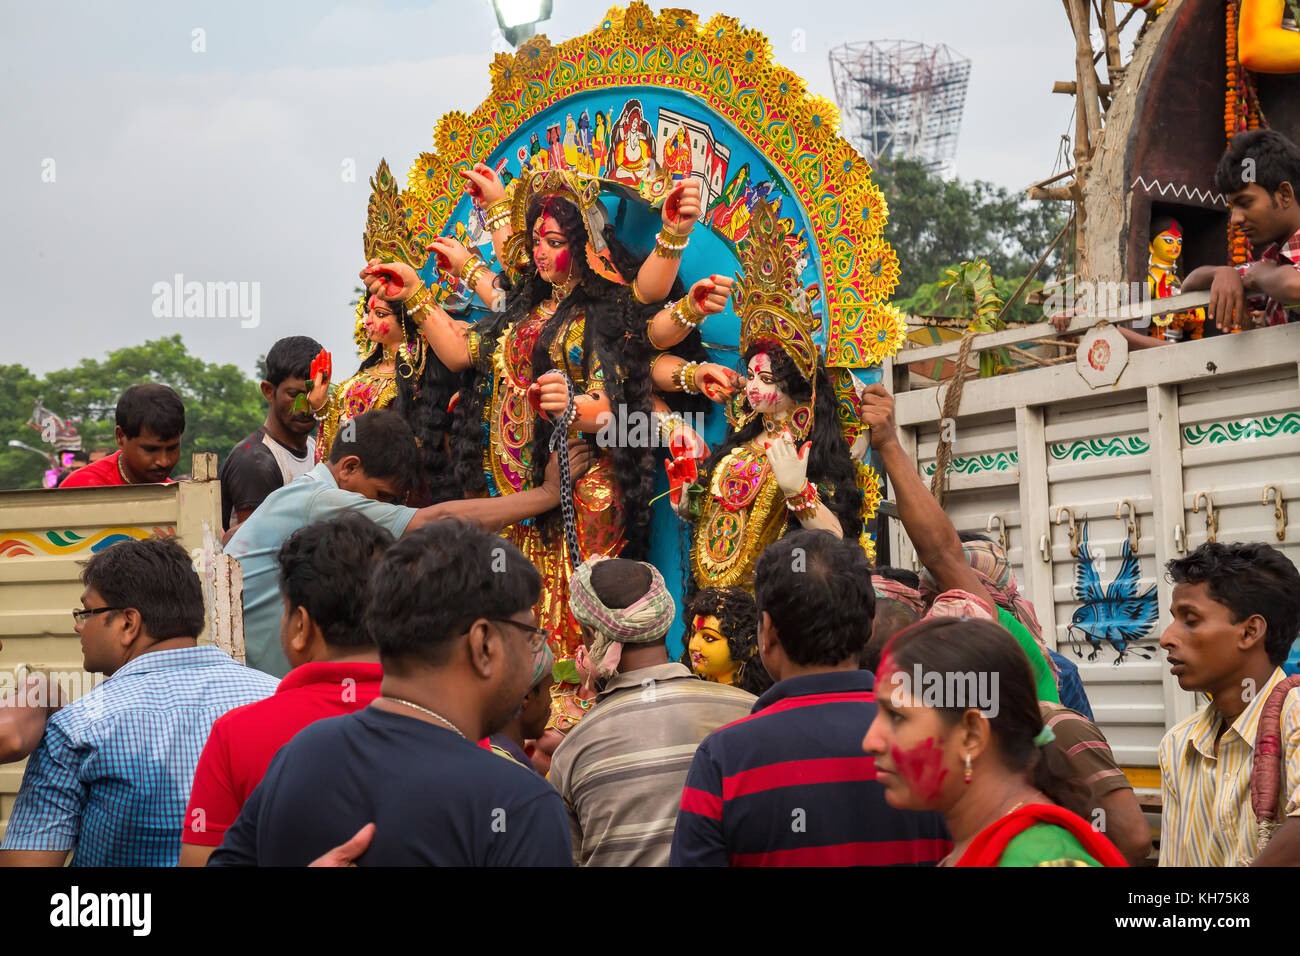 Durga puja idolo cerimonia di immersione a kolkata india. dea durga immersione nel fiume Gange a babughat come parte dei rituali del festival Foto Stock